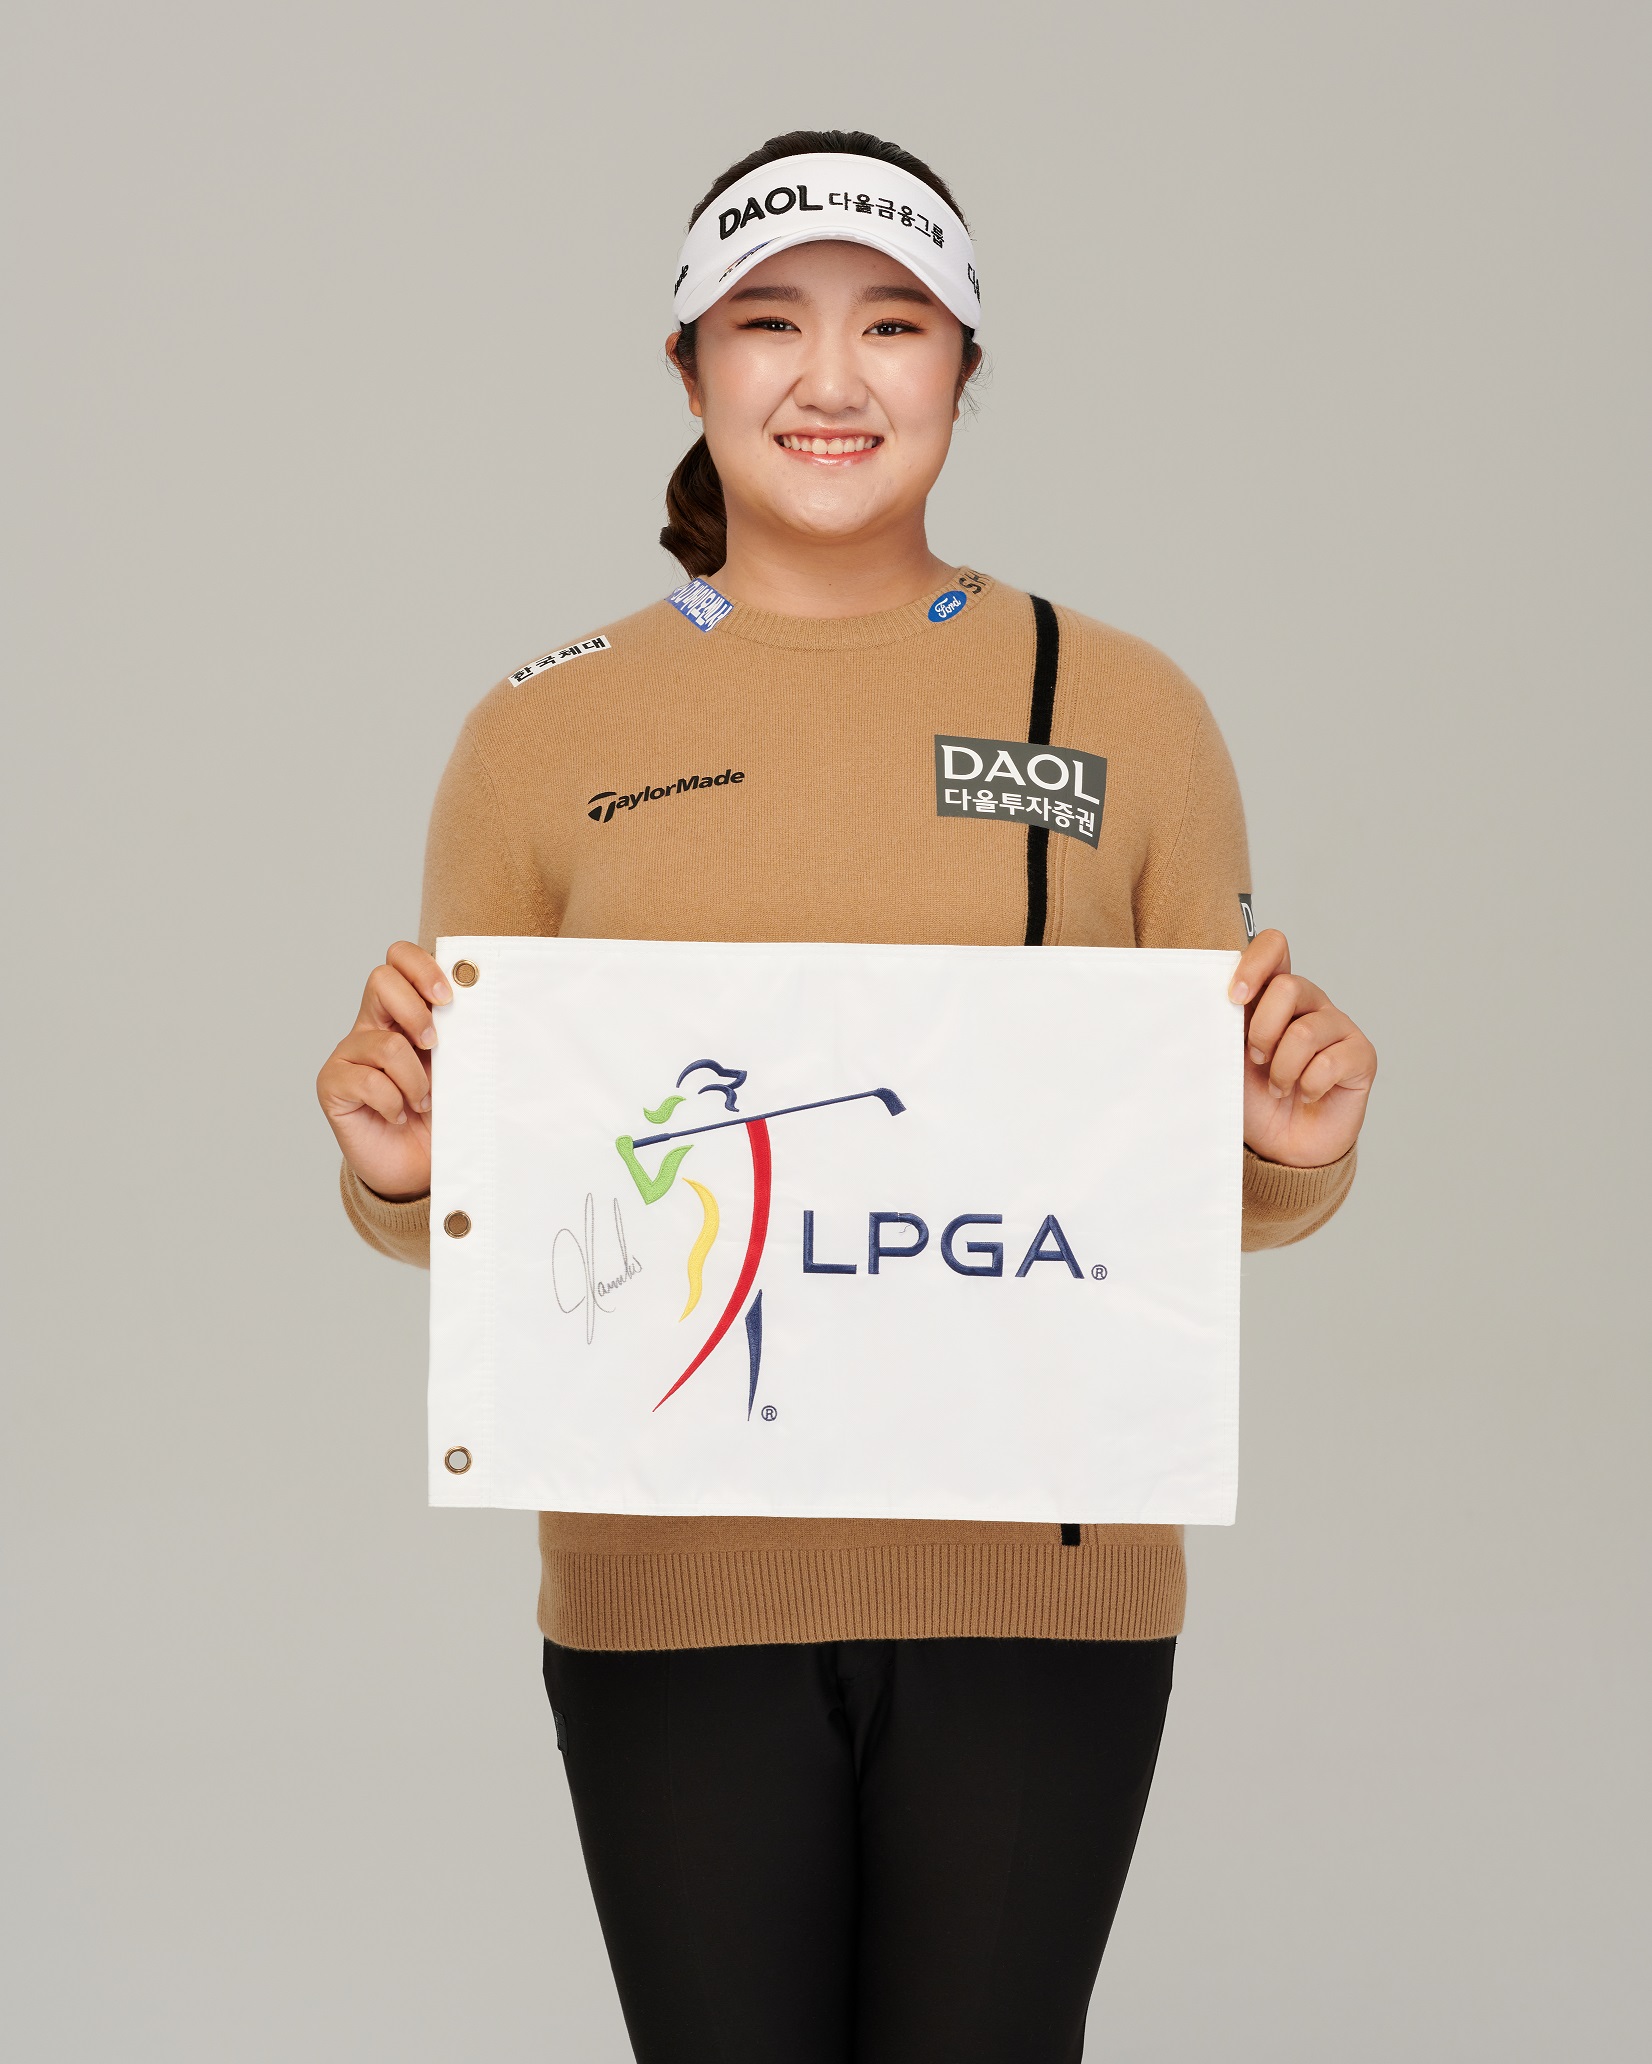 유해란, 생일날 LPGA 데뷔전 나서… “많은 의미가 담긴 대회, 좋은 마무리 하고 싶다